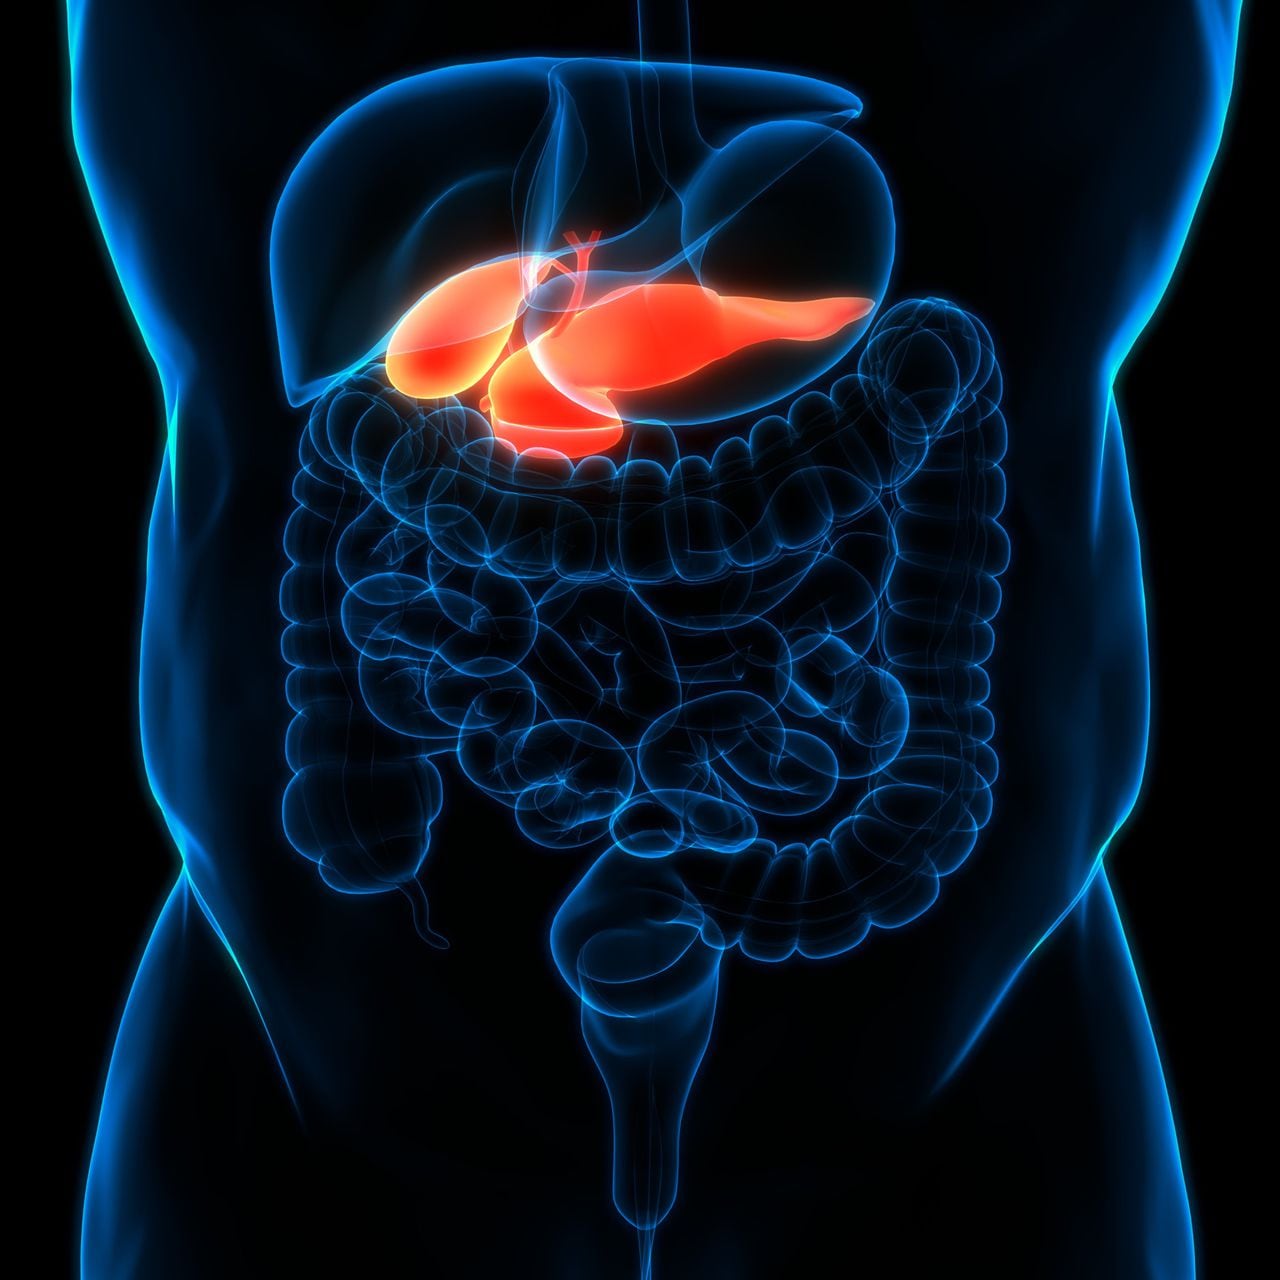 El cáncer de páncreas, uno de los más mortíferos a nivel mundial, rara vez se detecta en sus etapas iniciales, cuando es más curable.